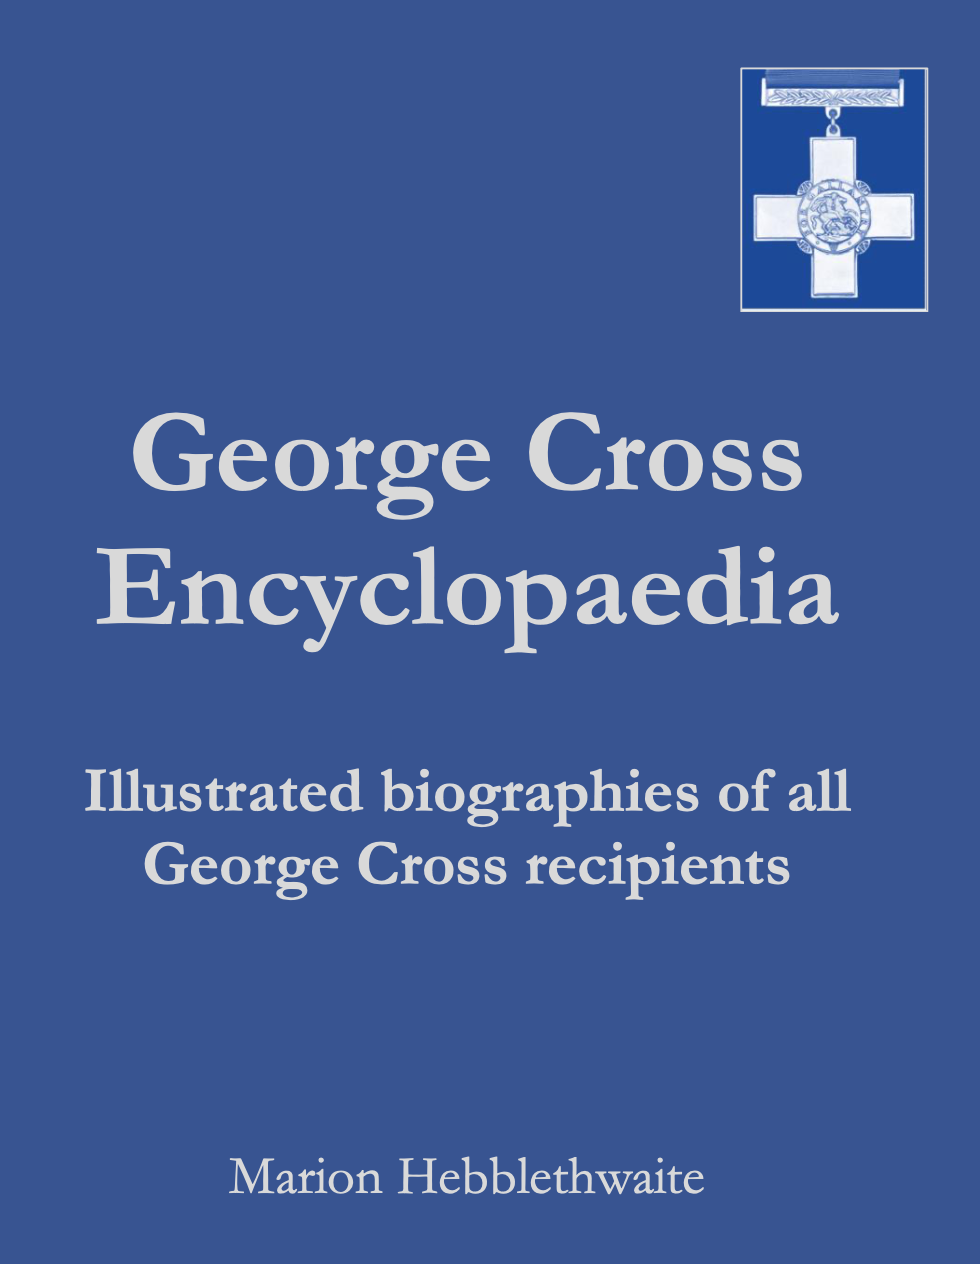 George Cross Encyclopaedia